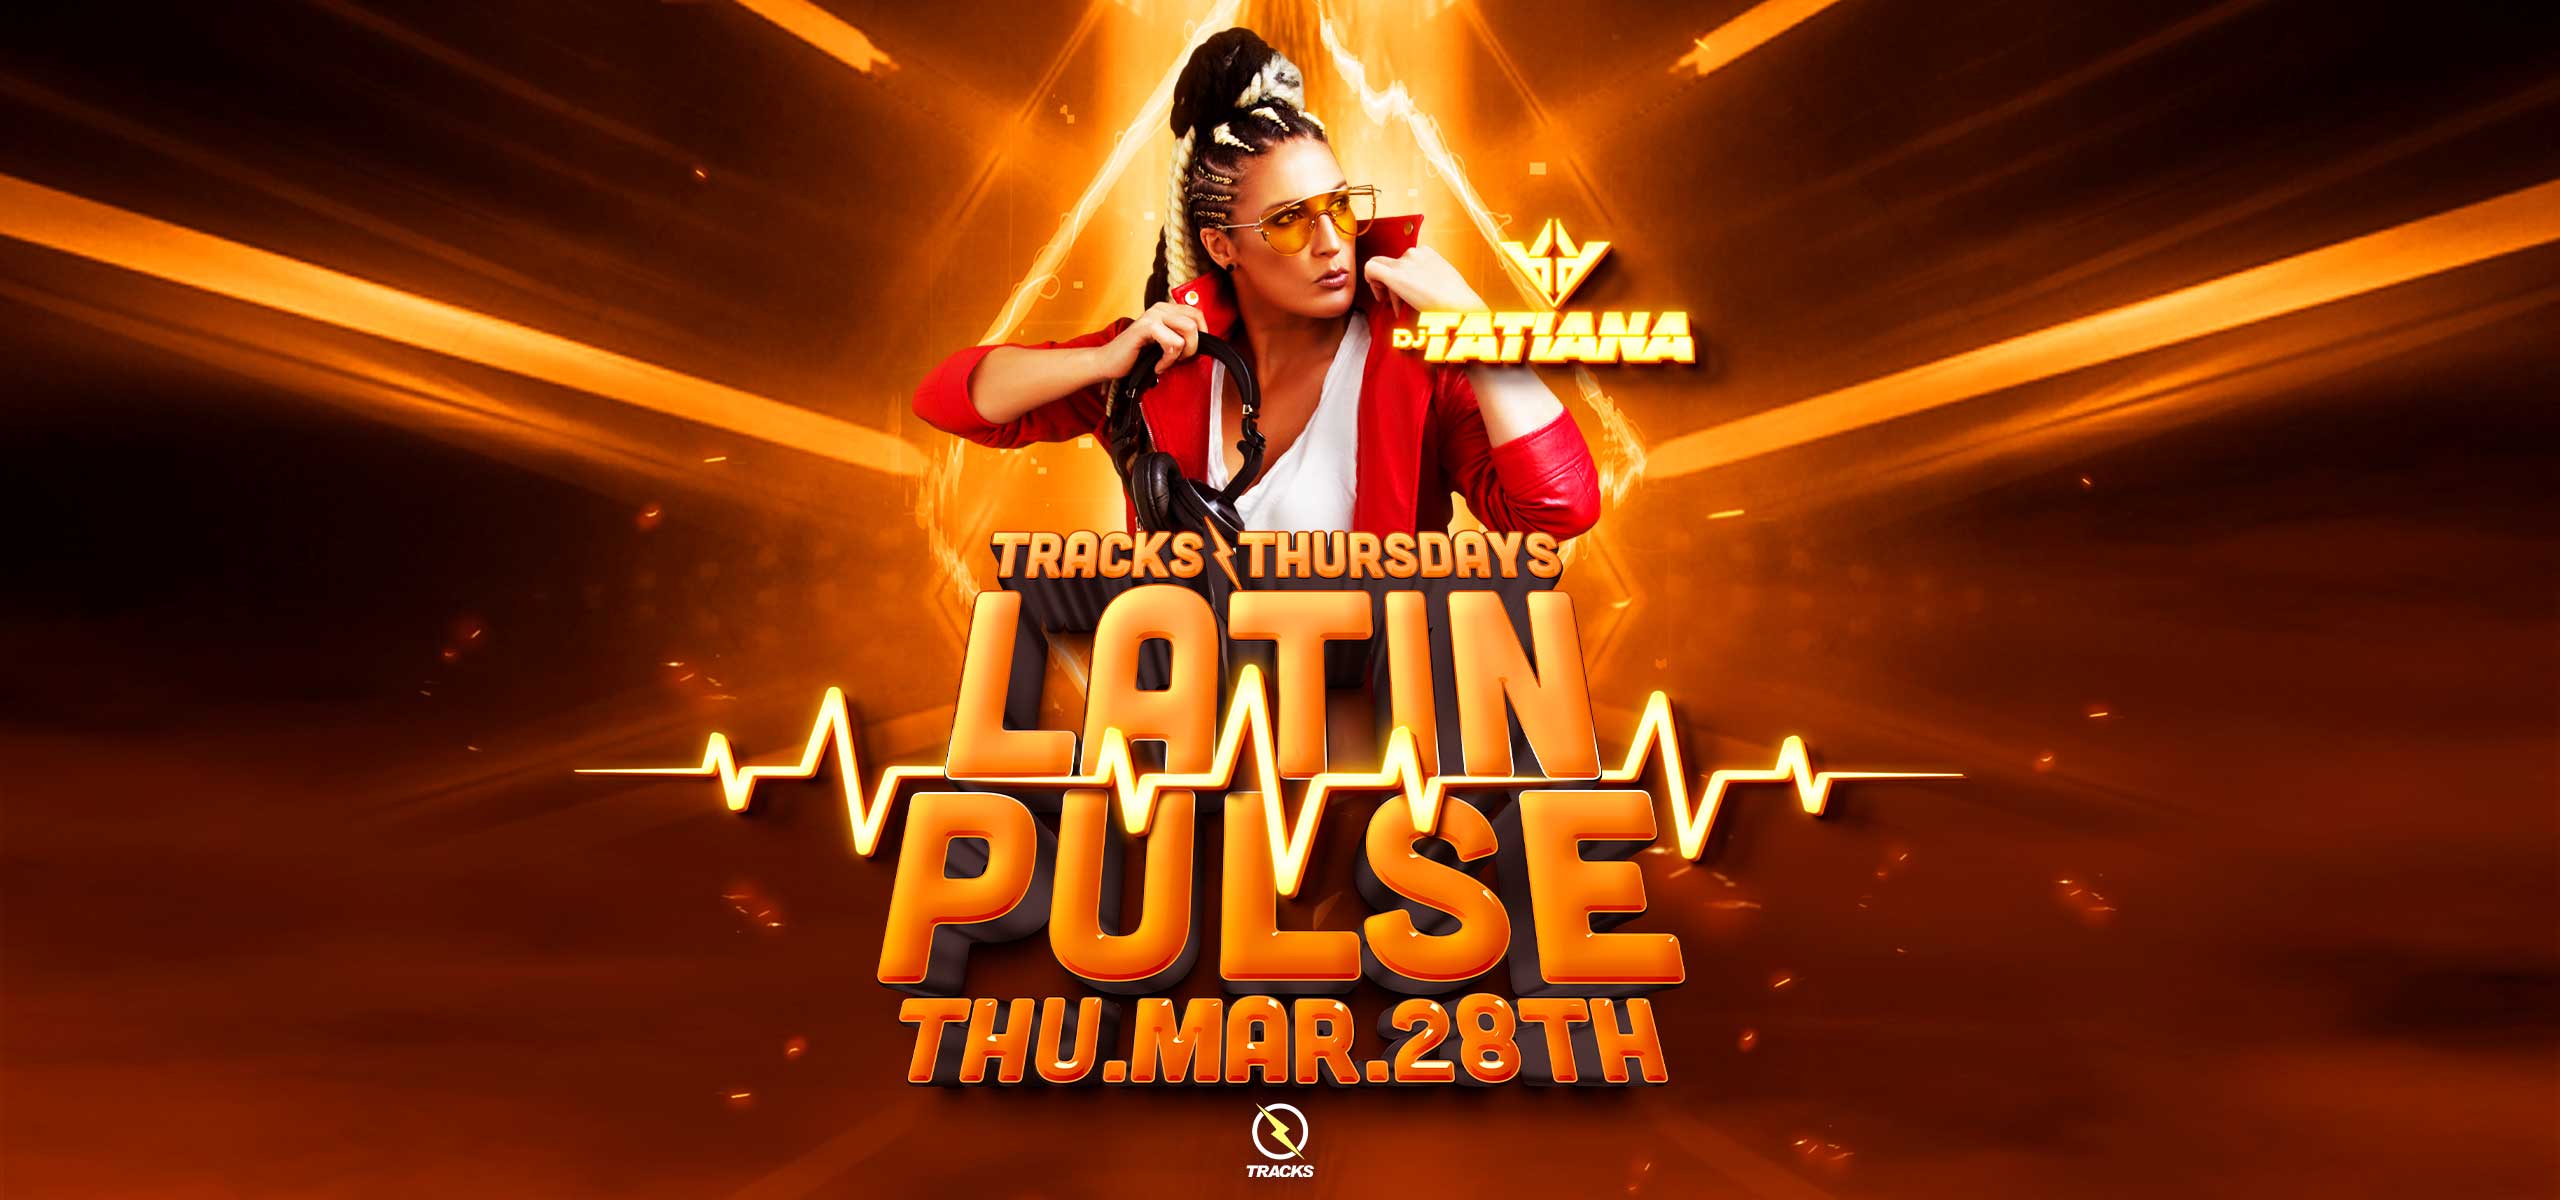 18+ Tracks Thursdays: Latin Pulse Ft. DJ Tatiana